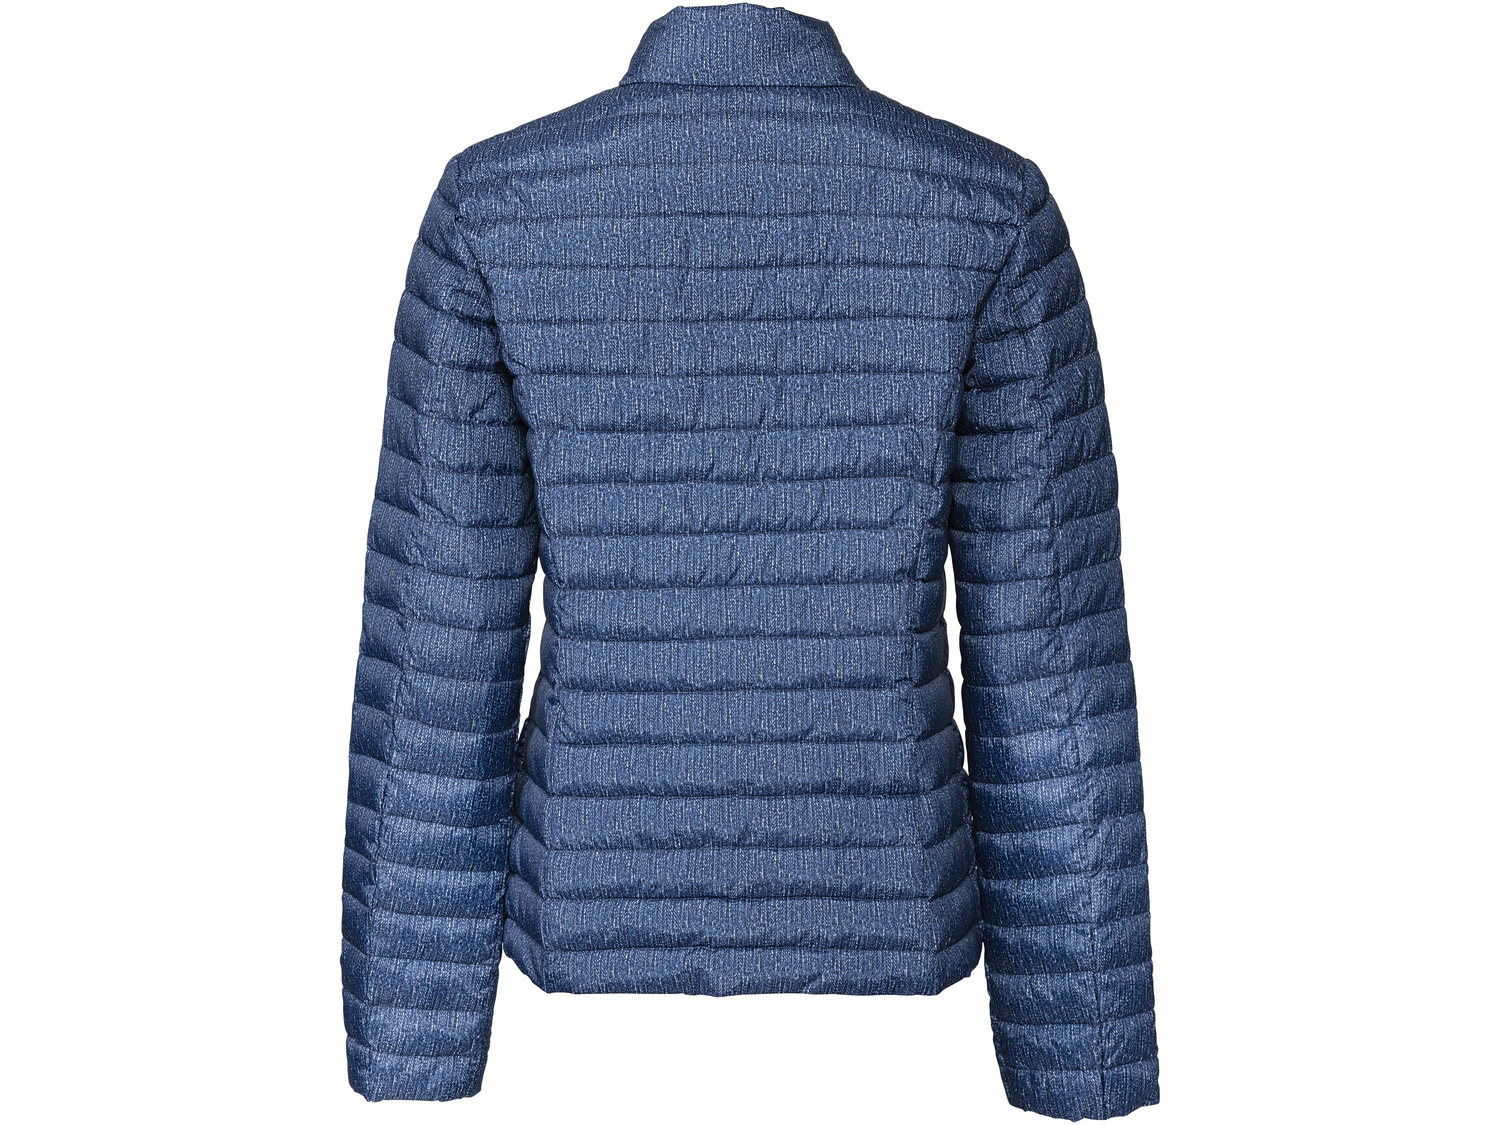 Pikowana kurtka termiczna Esmara, cena 69,00 PLN 
- rozmiary: 34-44NASZE KURTKI
- ...